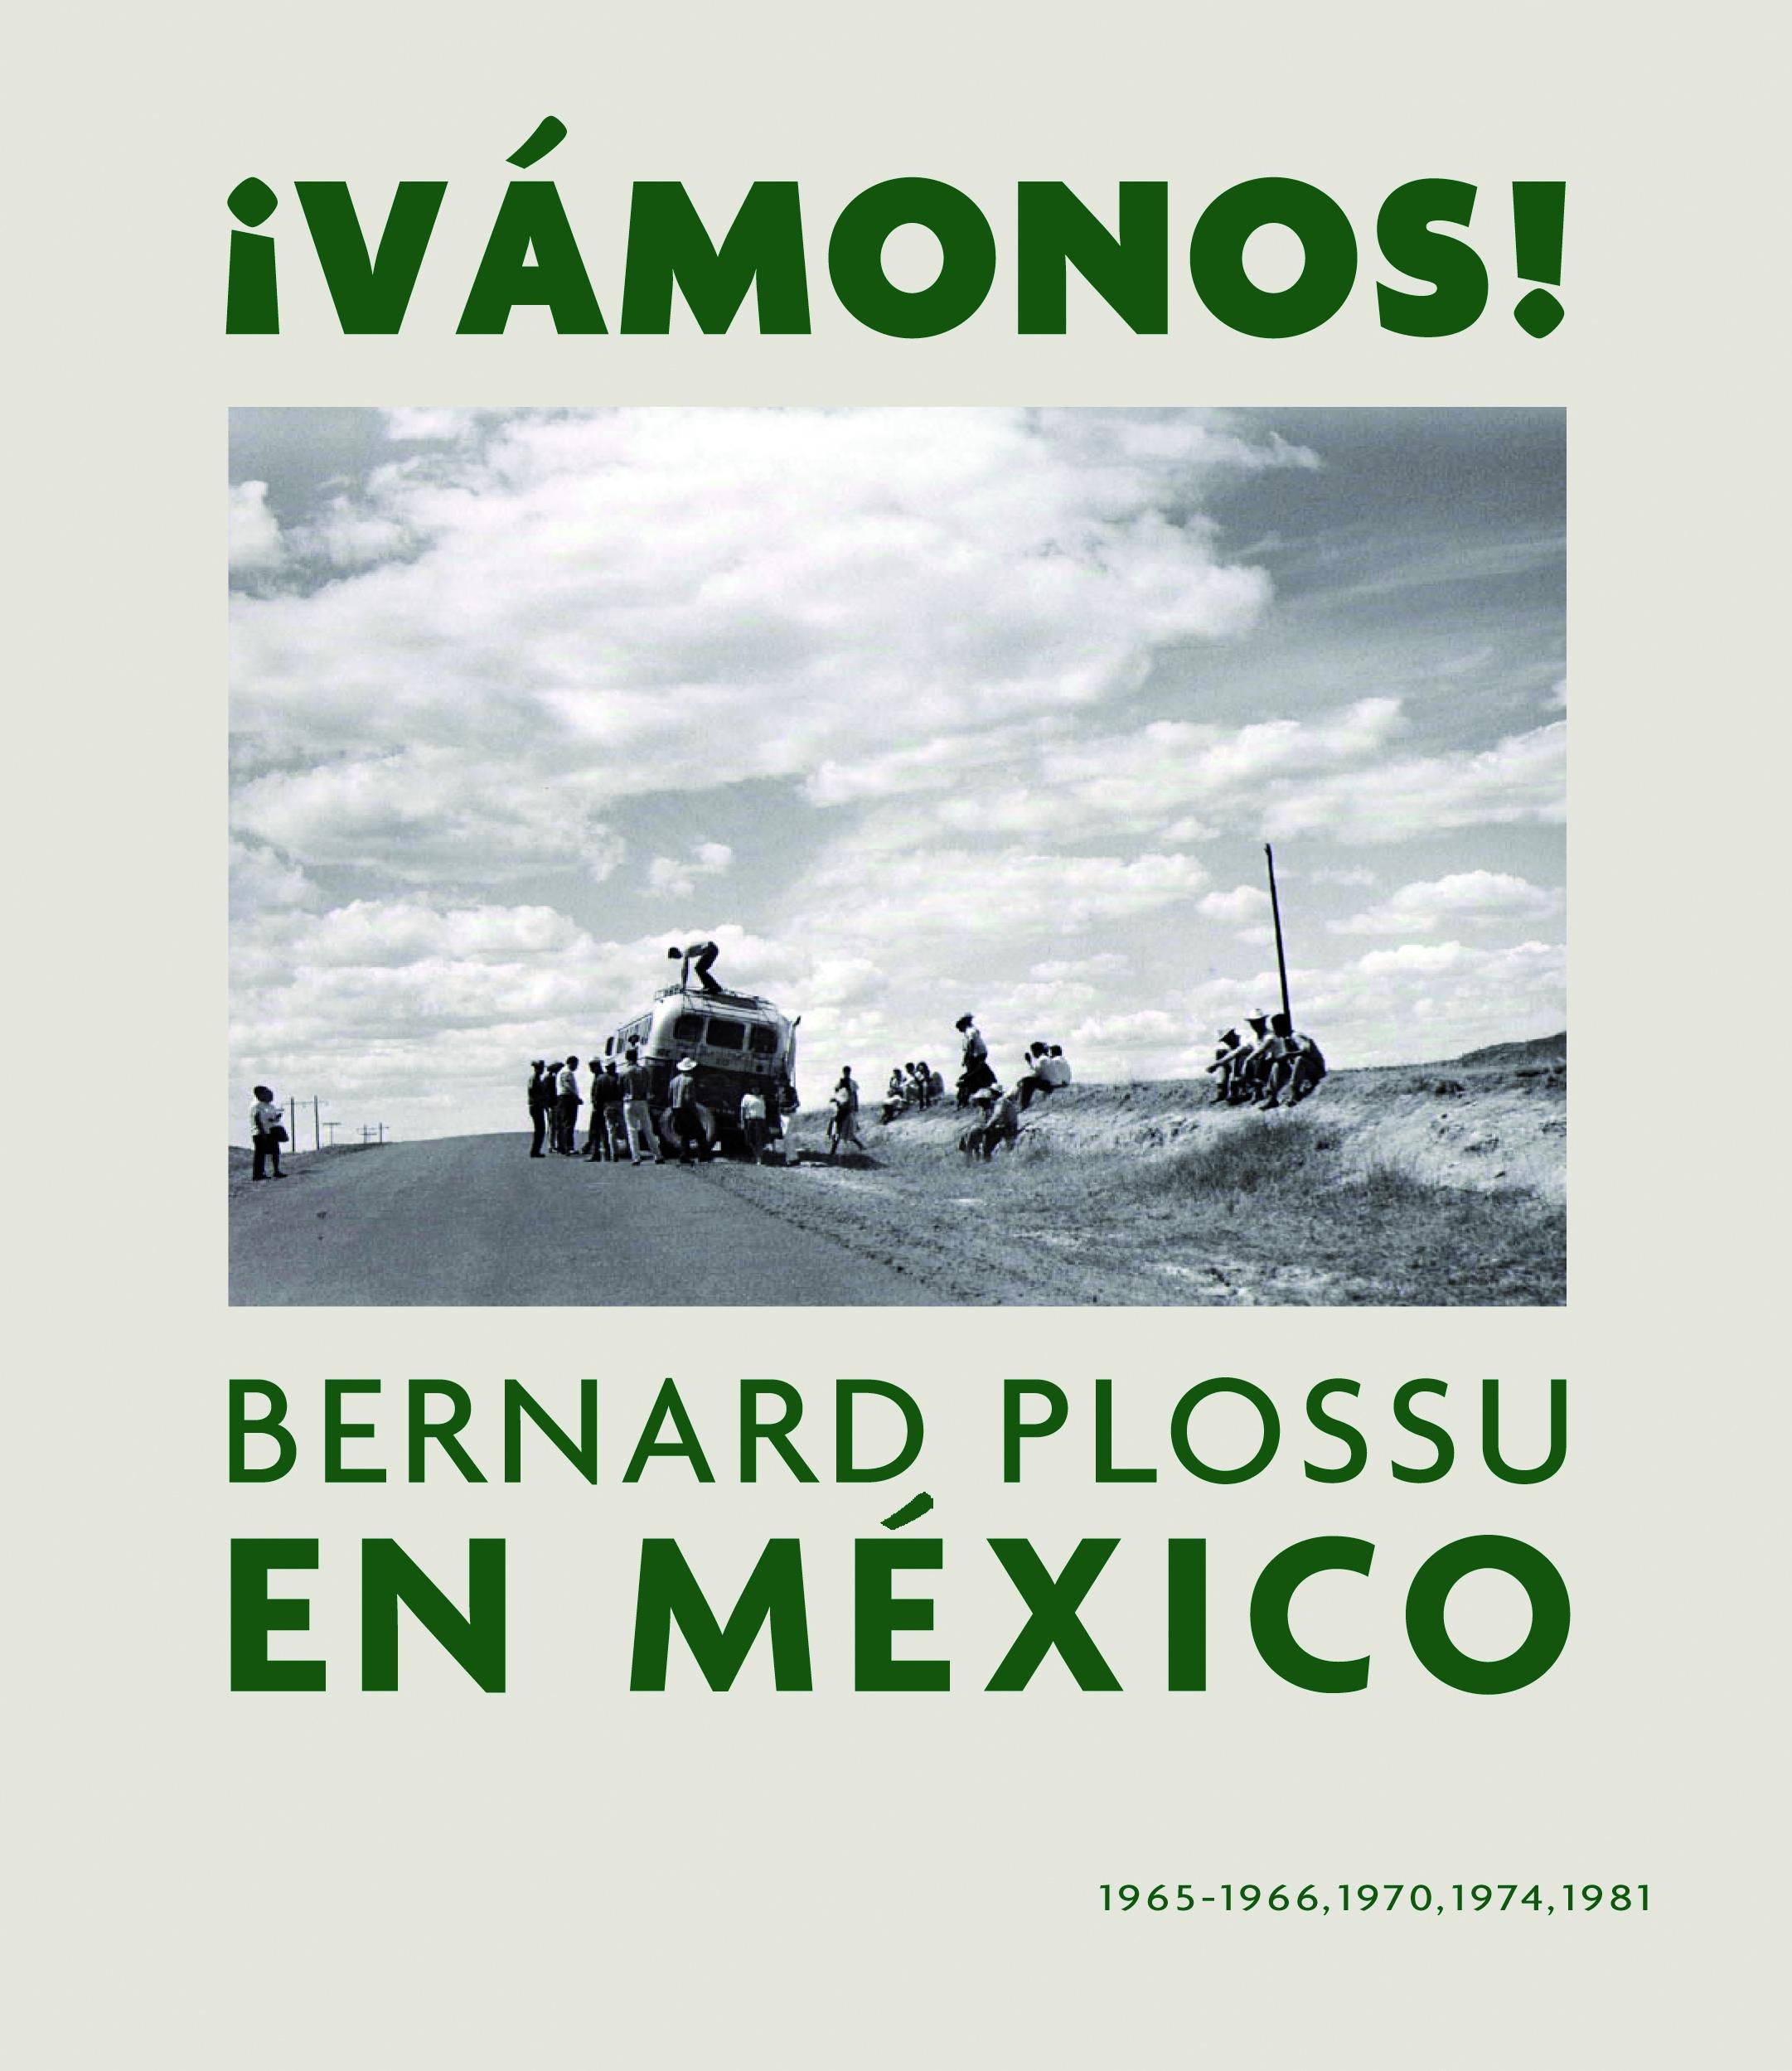 Vámonos! "Bernard Plossu en México"